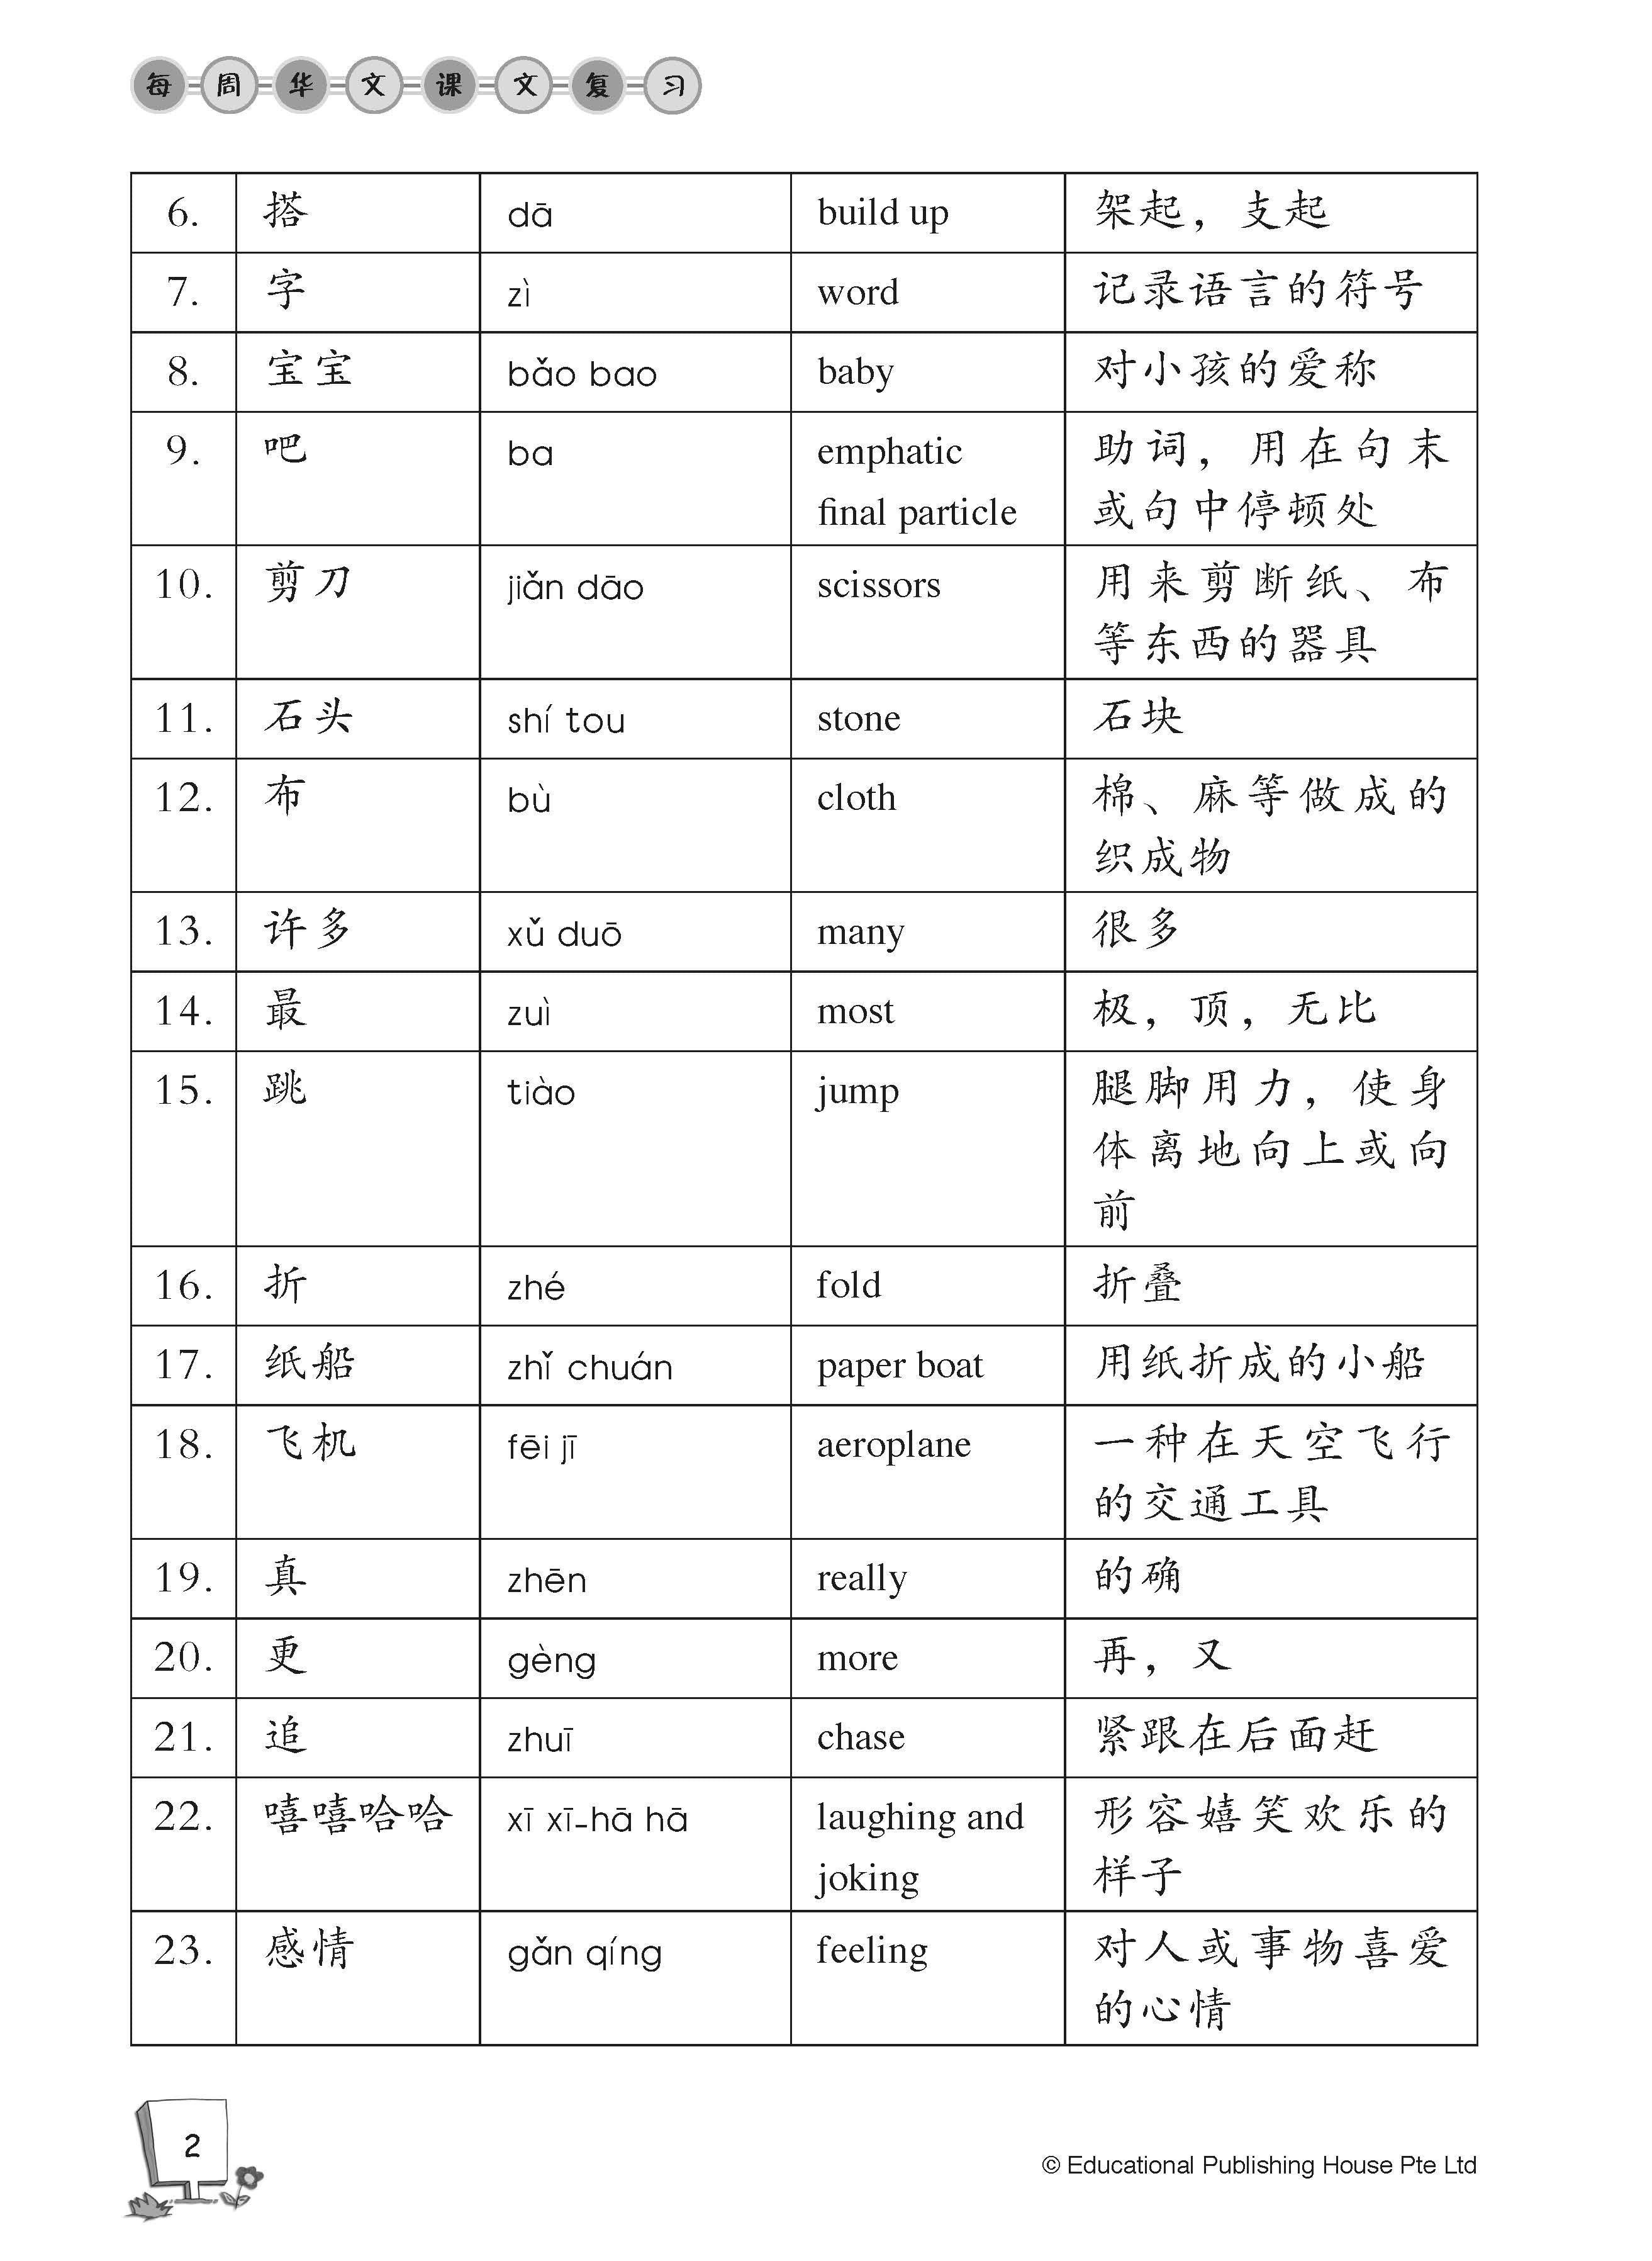 Primary 2B Chinese Weekly Revision 每周华文课文复习